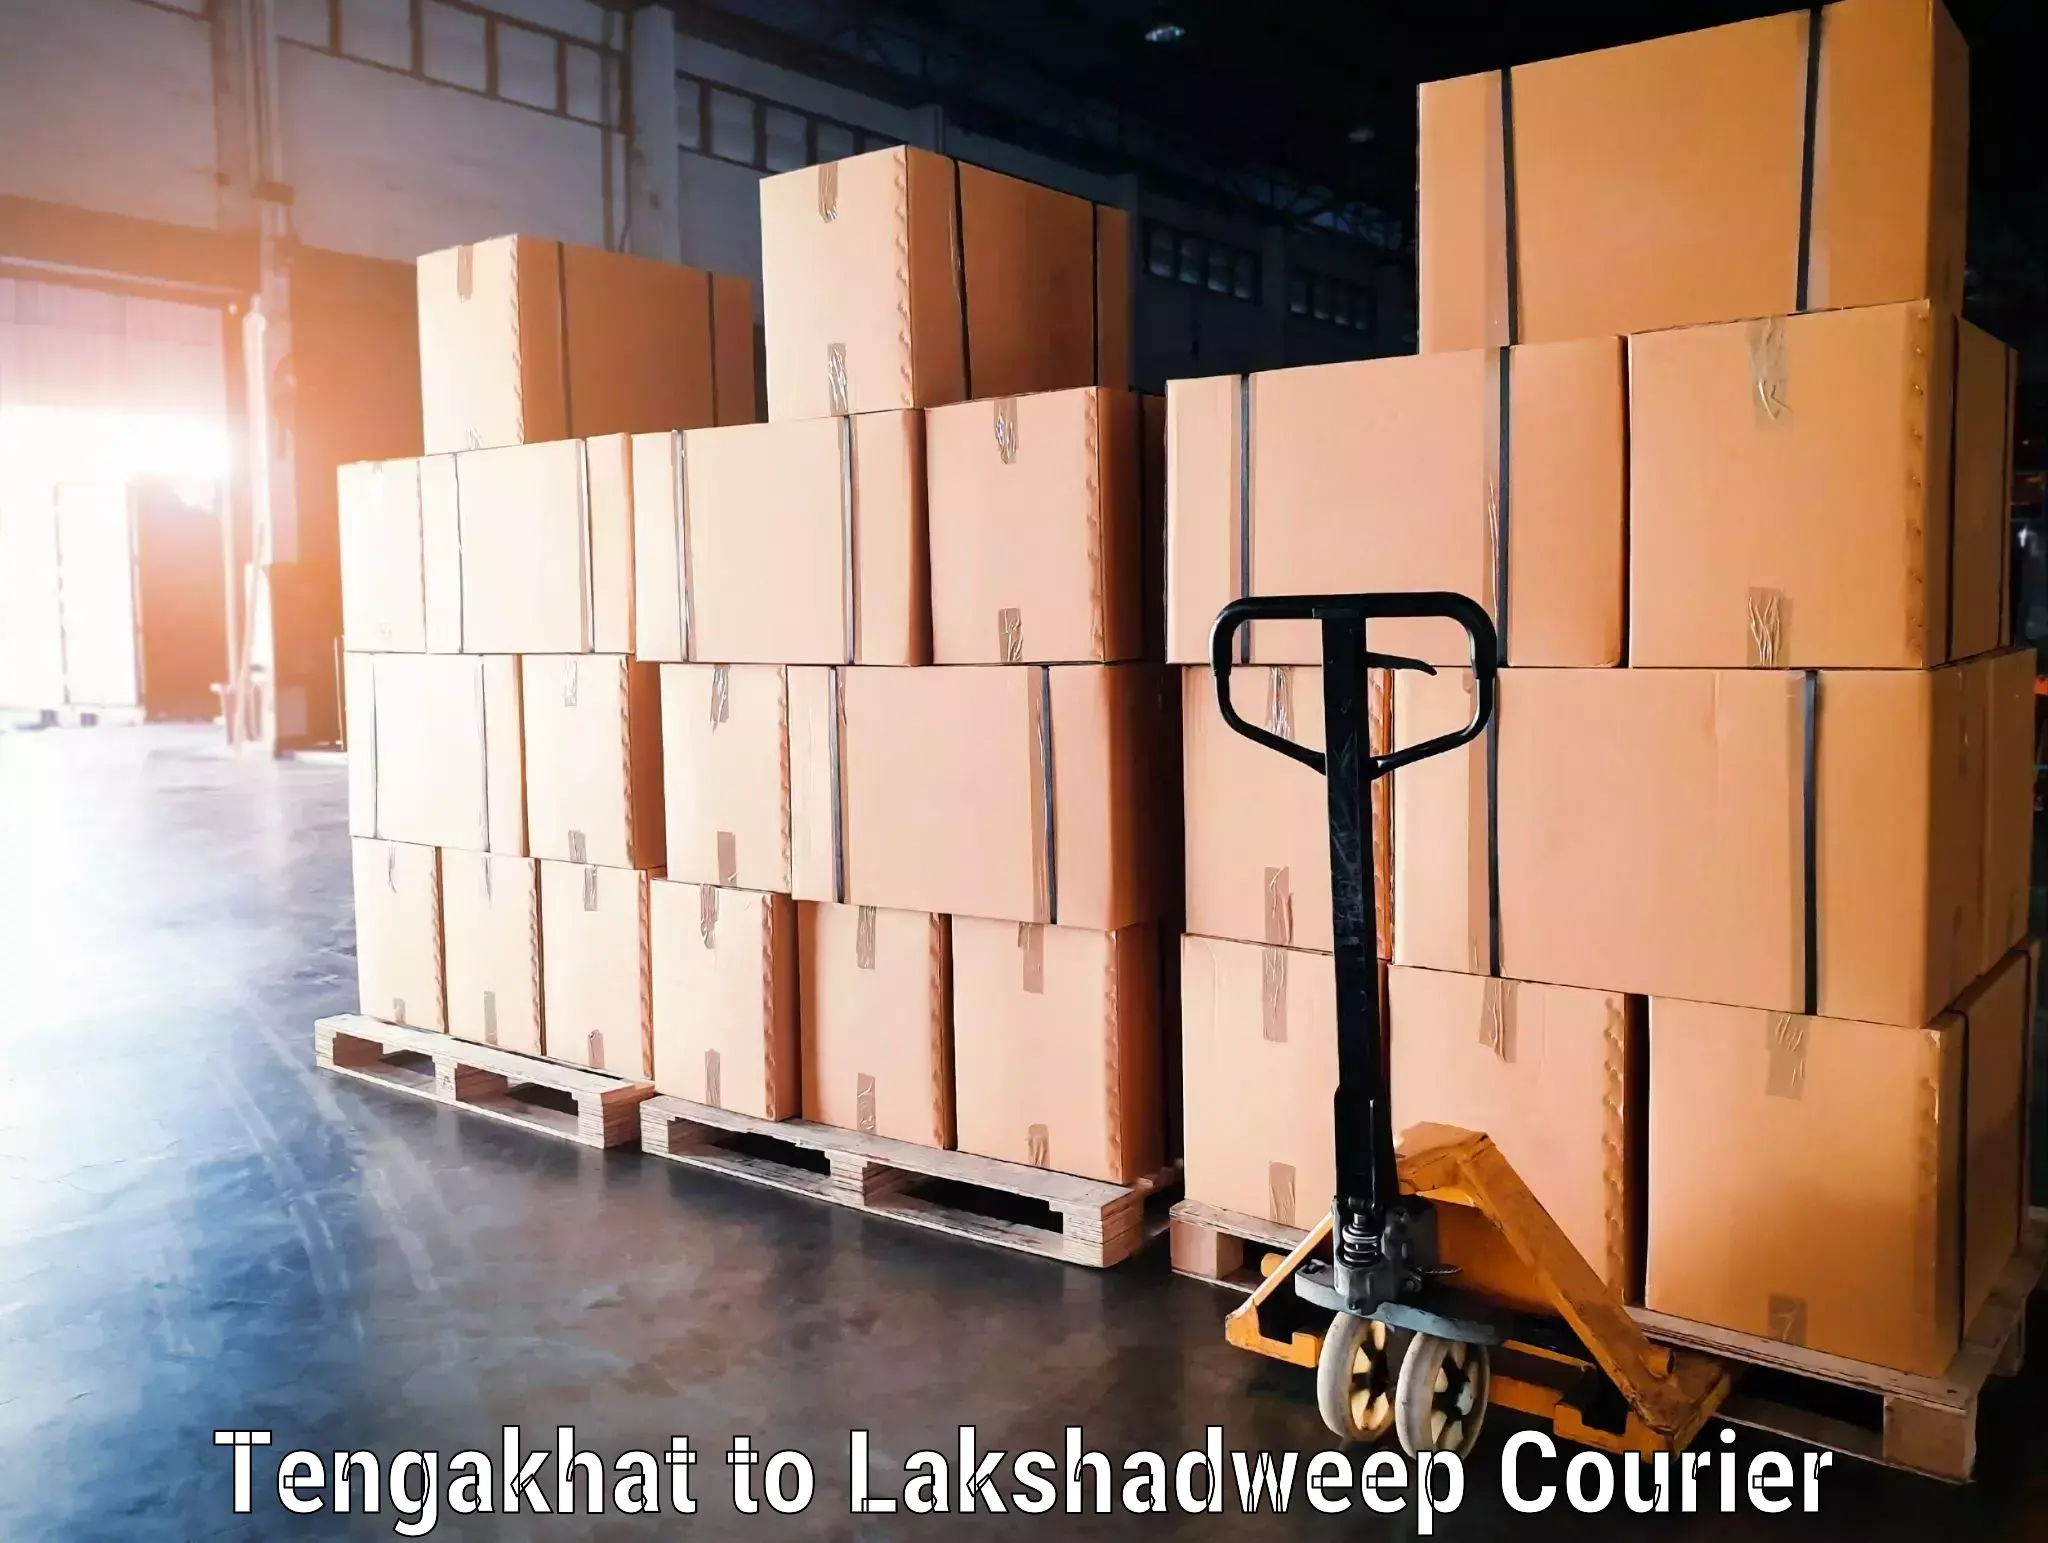 Luggage forwarding service Tengakhat to Lakshadweep